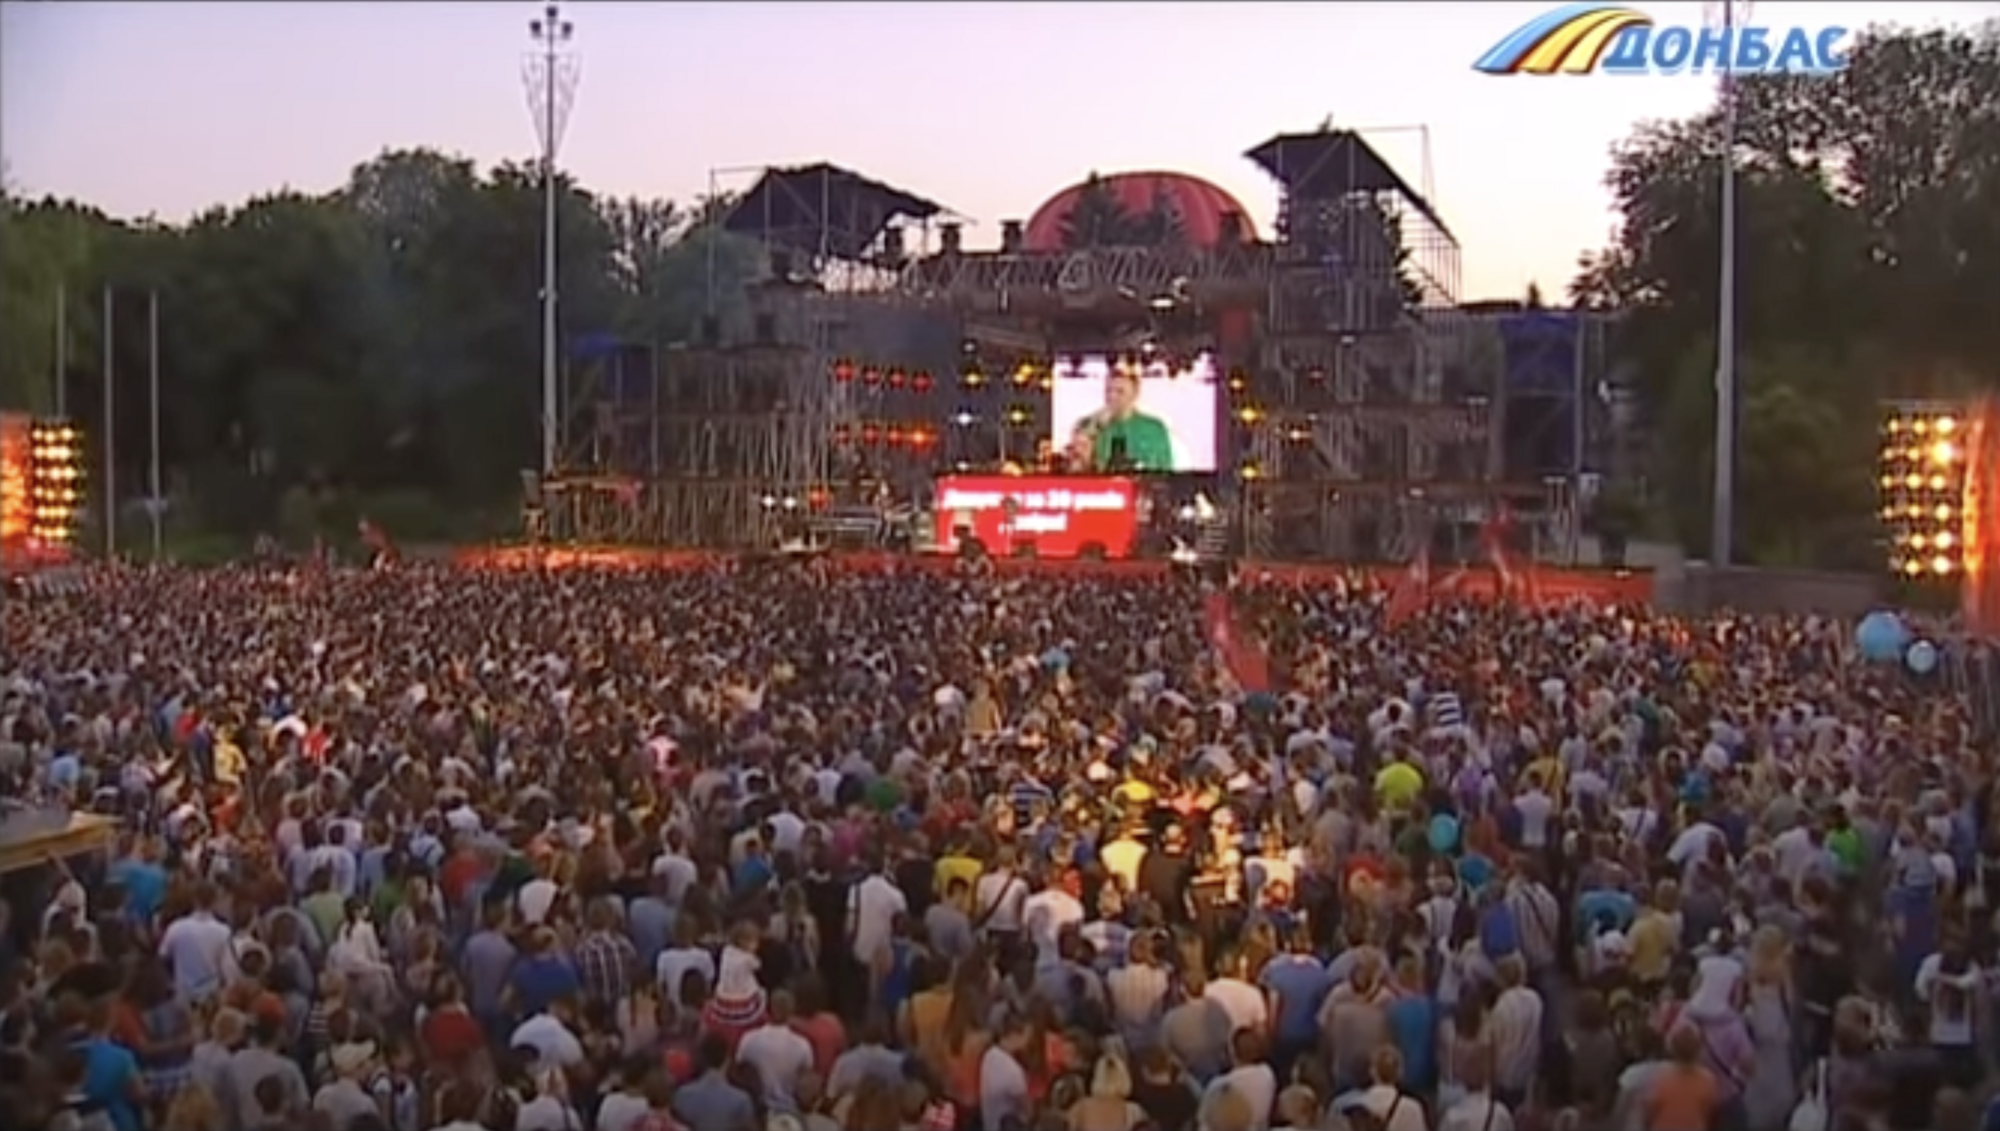 А через рік почалася війна. Відео з концерту "Тартака" в Донецьку, де люди відриваються під українські пісні, зворушило мережу
